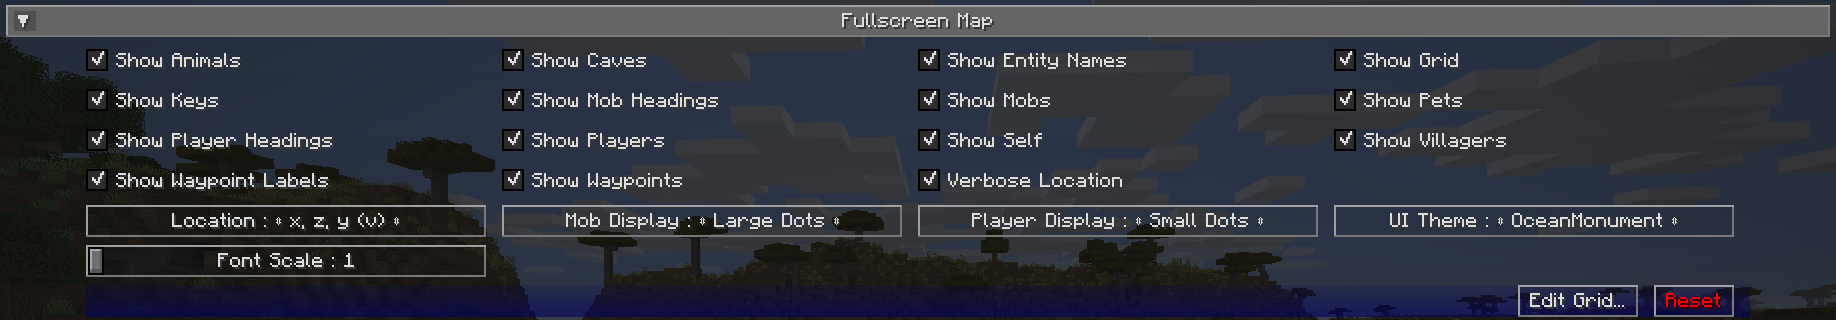 Full-screen map settings